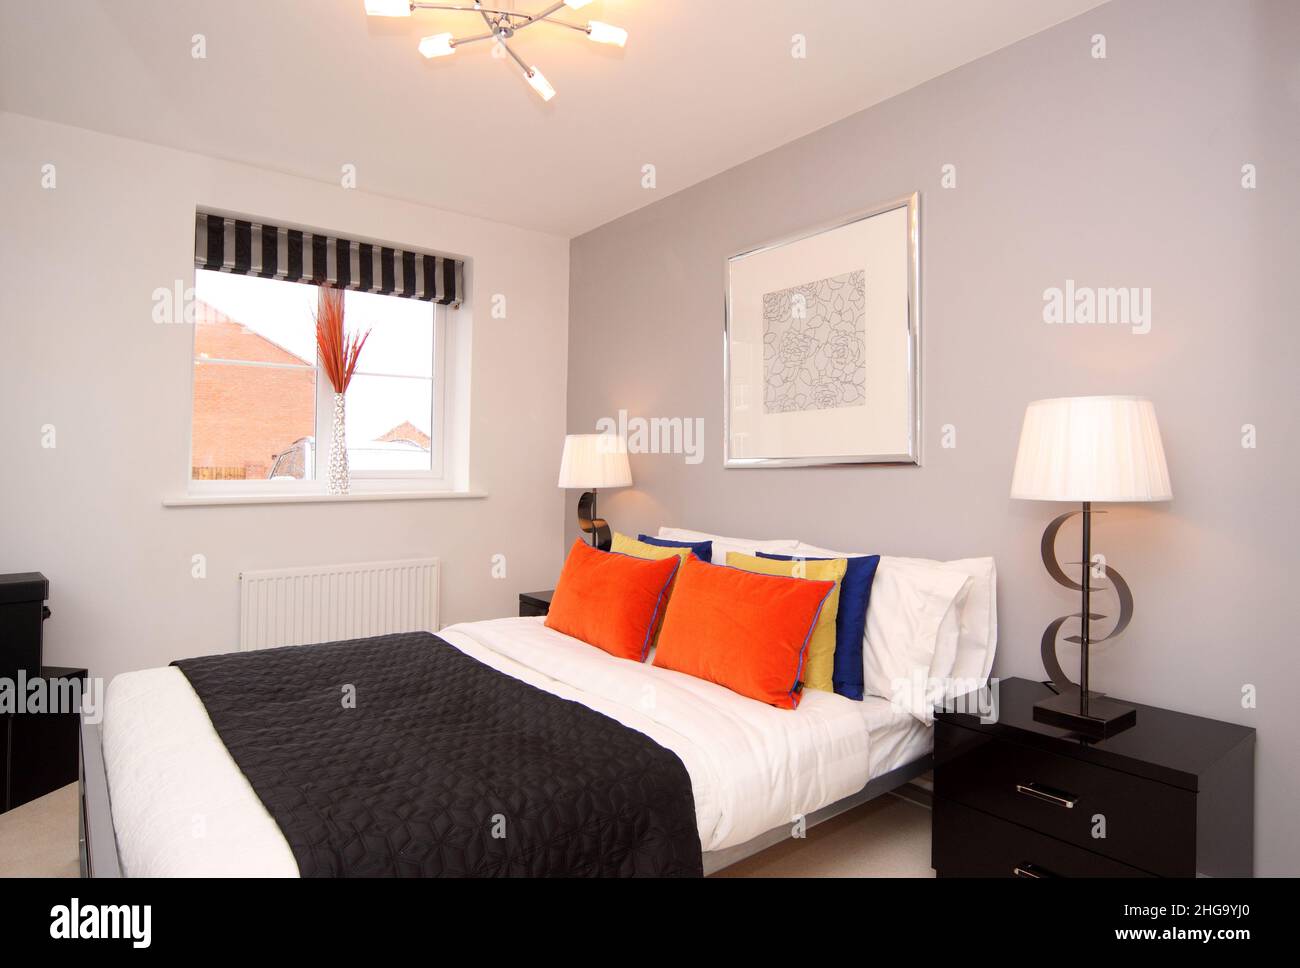 Chambre noire blanche et orange, couvre-lit, lit double, lit king size, thème moderne, lampes de chevet, couleur Banque D'Images